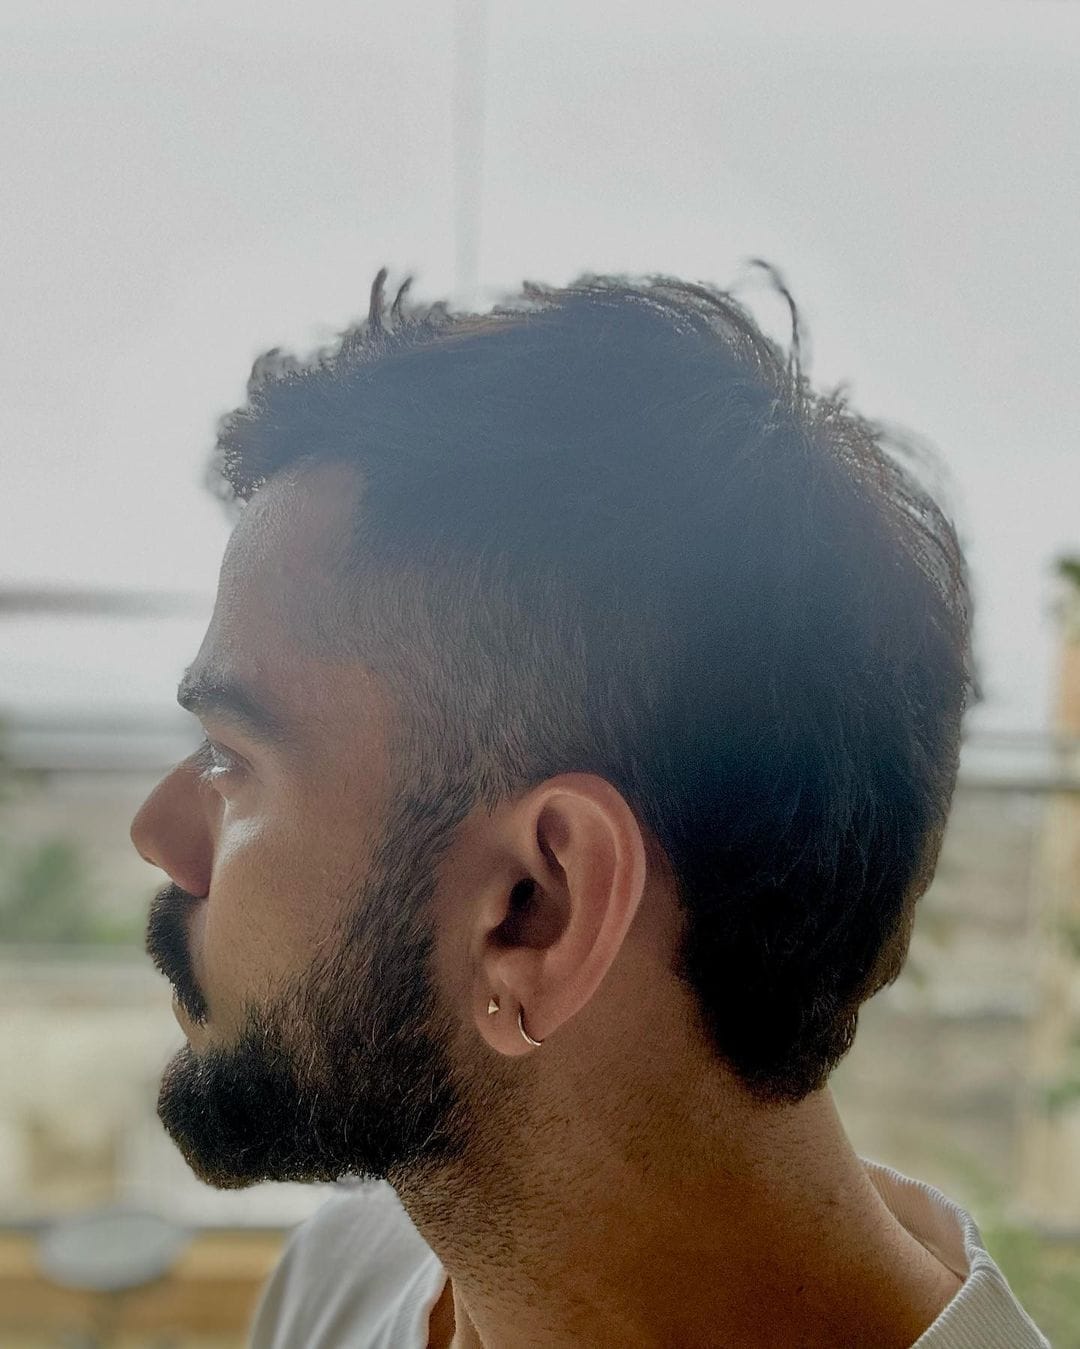 Virat Kohli New Look: विराट कोहली ने बदला अपना लुक, न्यू हेयर स्टाइल हुआ  वायरल, देखें तस्वीरें - virat kohli debuts new haircut as ex india captain  arrives in mohali for 1st